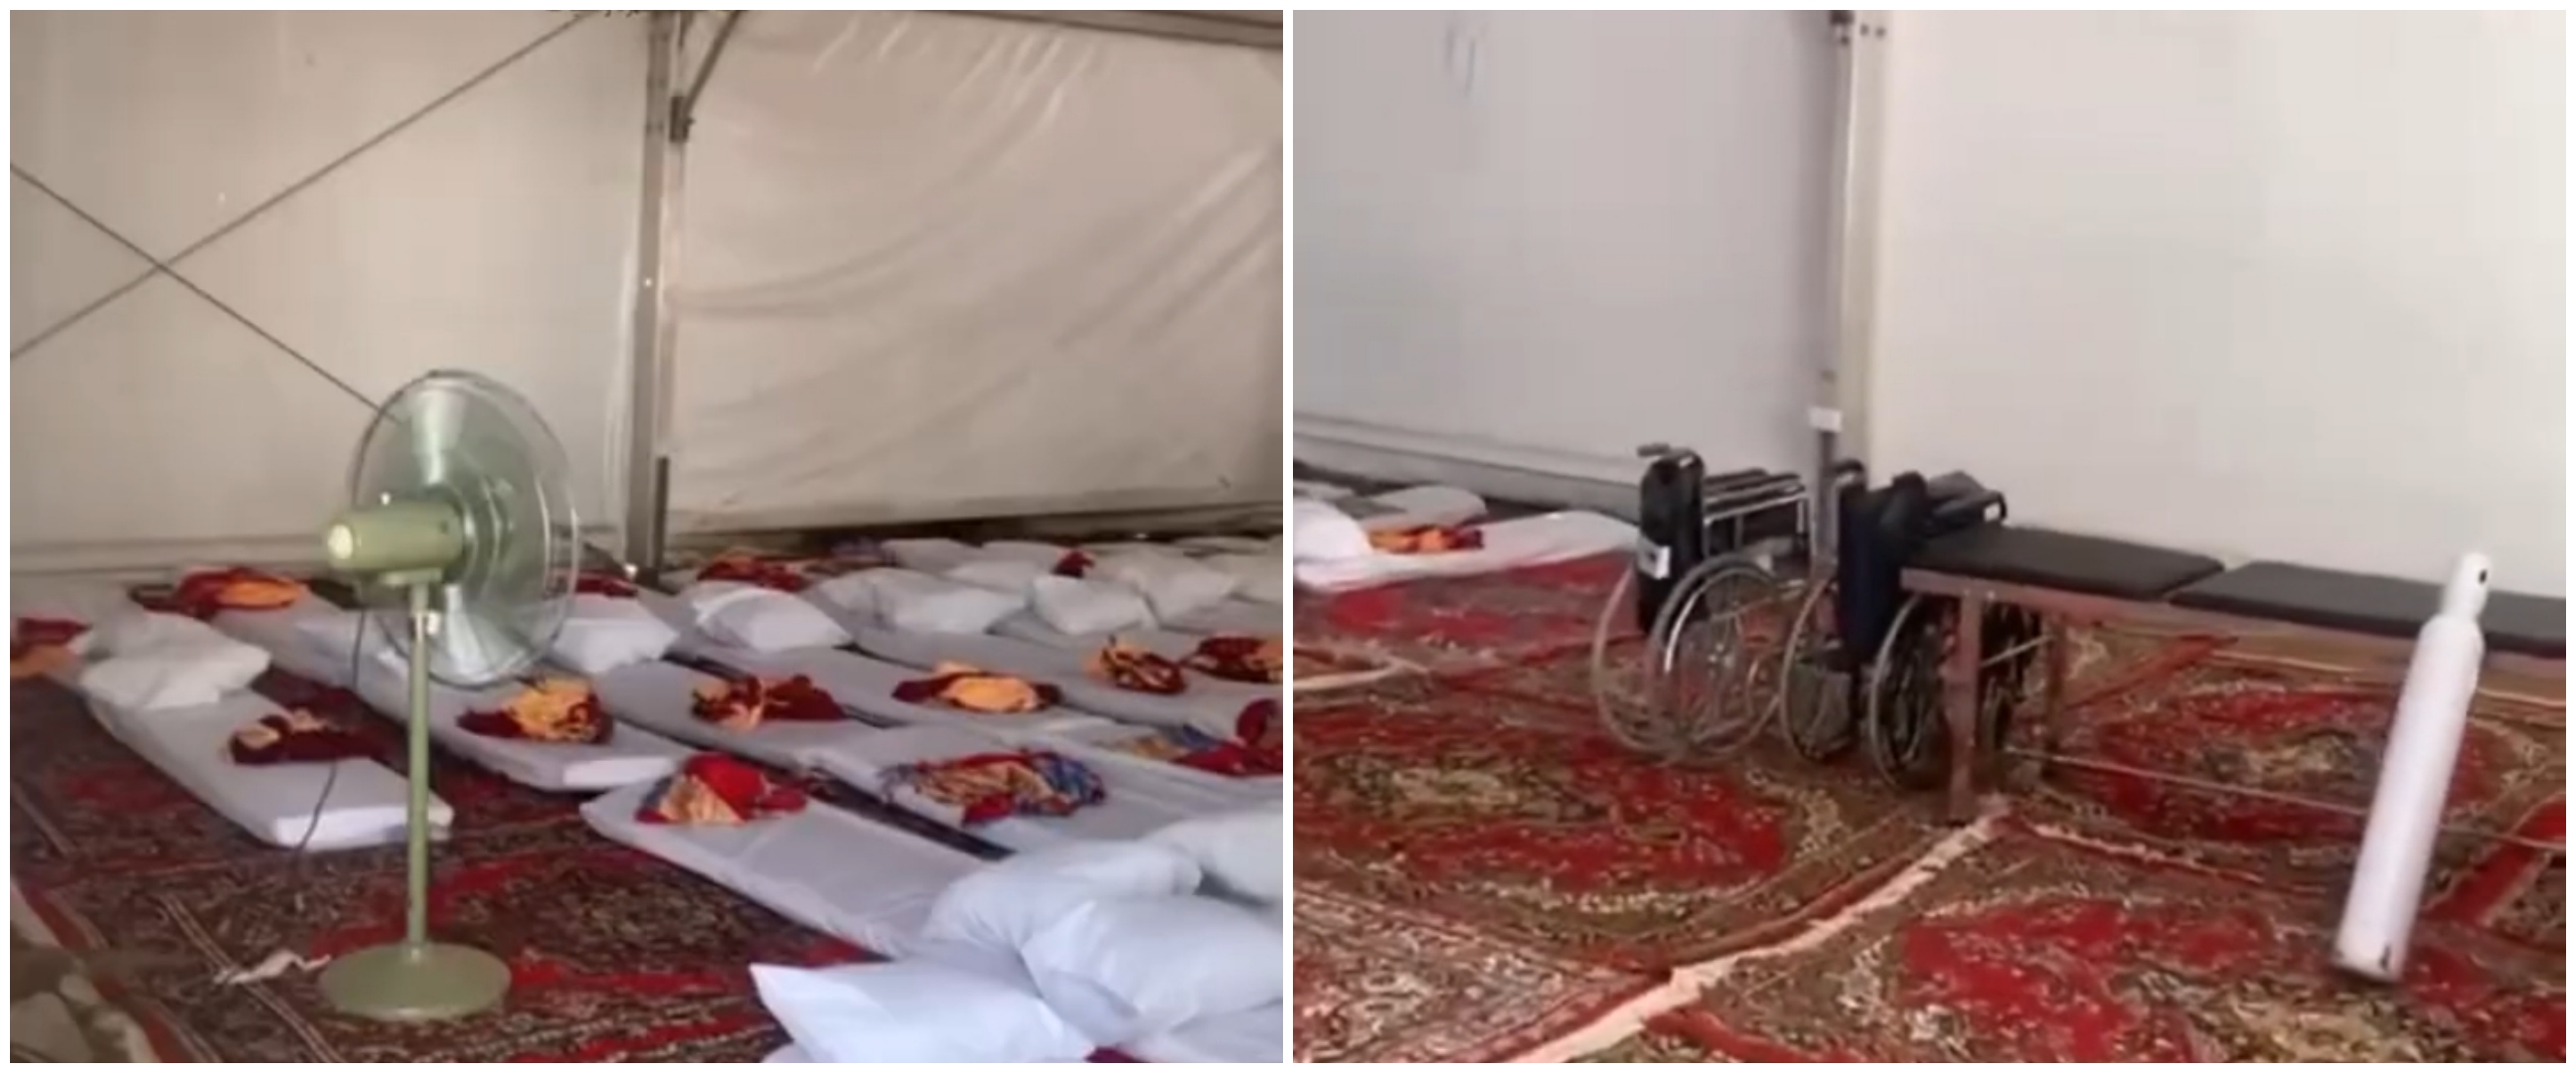 Penampakan tenda jemaah haji di Arafah, dilengkapi kasur hingga blower